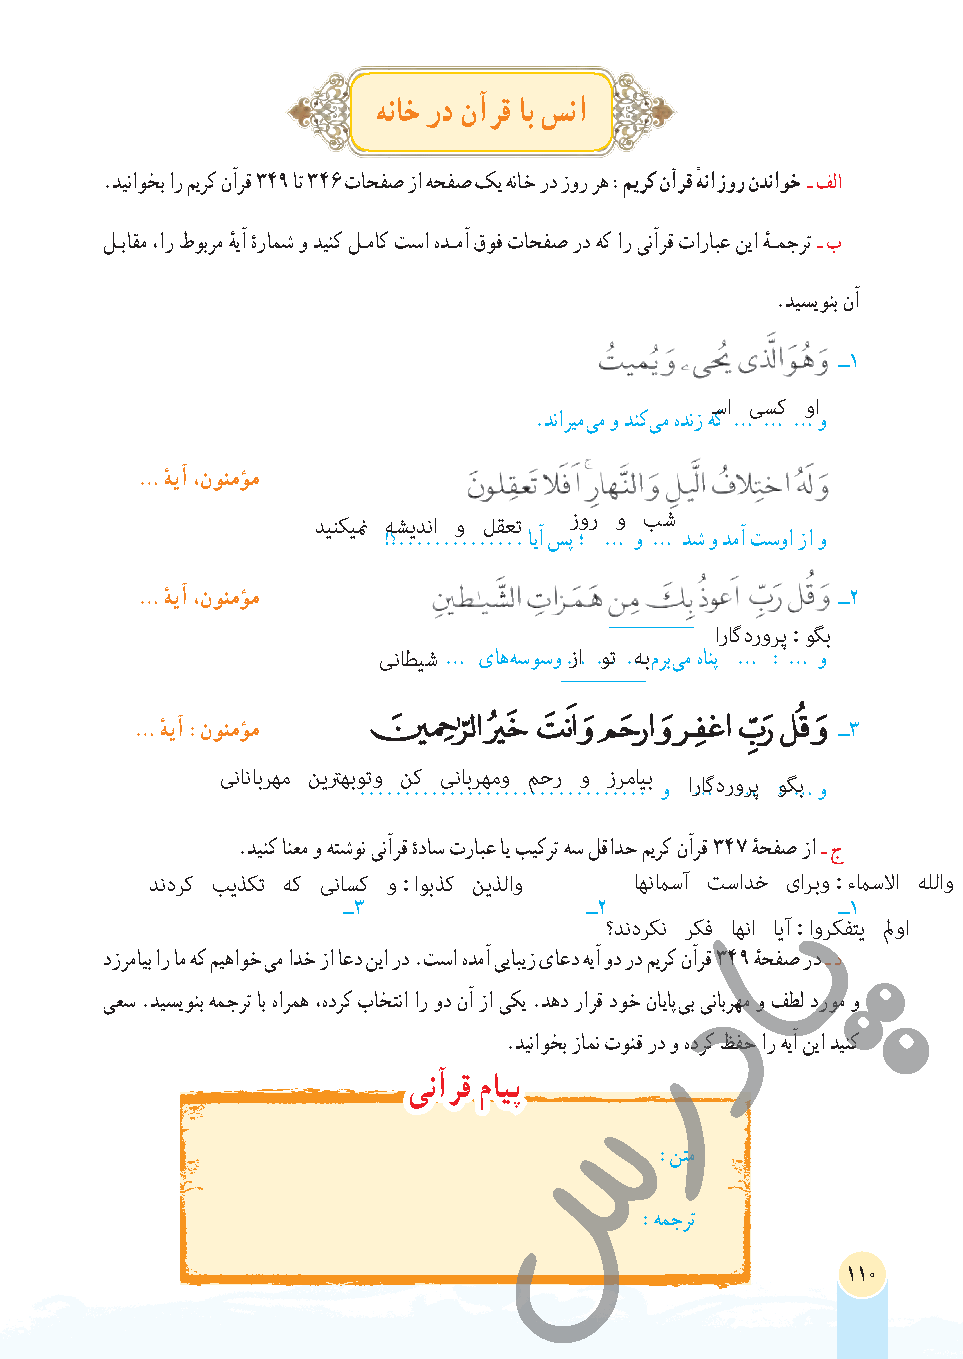 جواب فعالیت سوم درس 12 قرآن هفتم - جلسه دوم